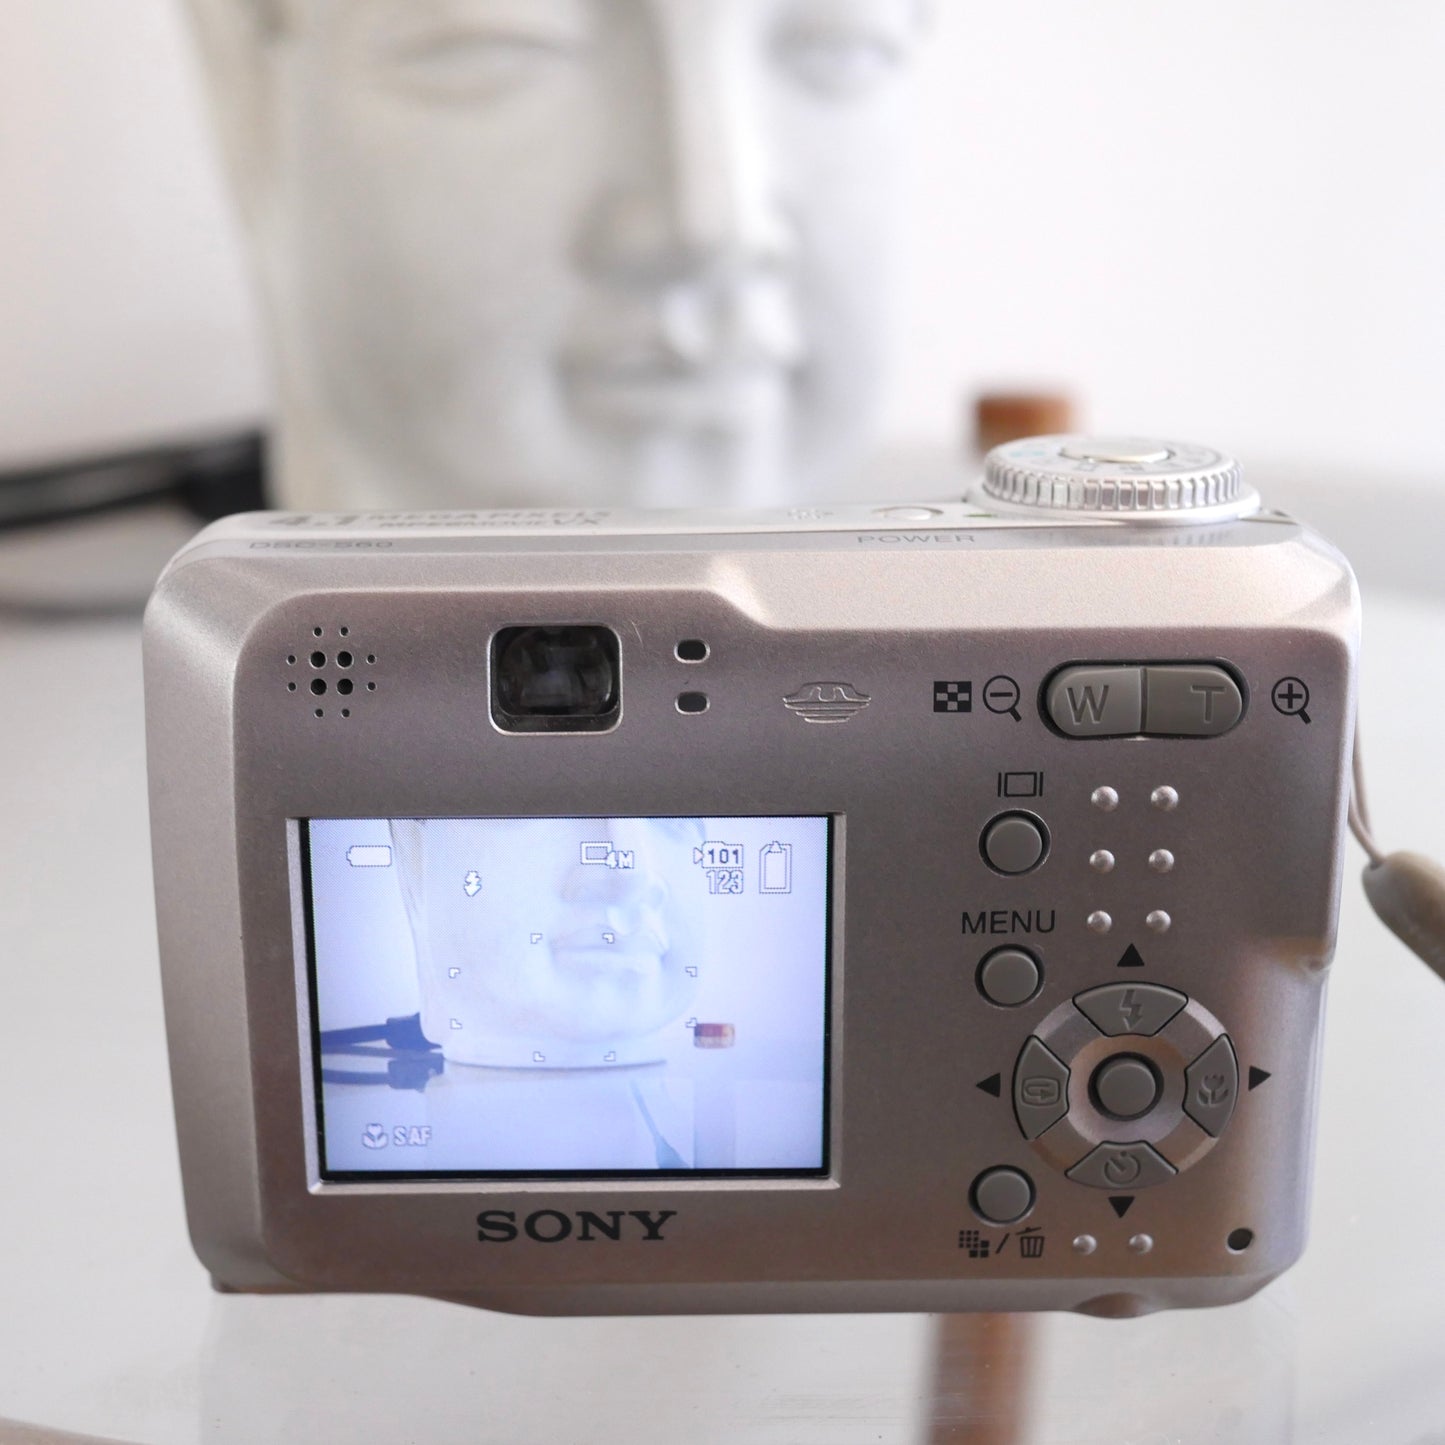 Sony Cybershot DSC-560 4.1 Megapixel Digital Camera